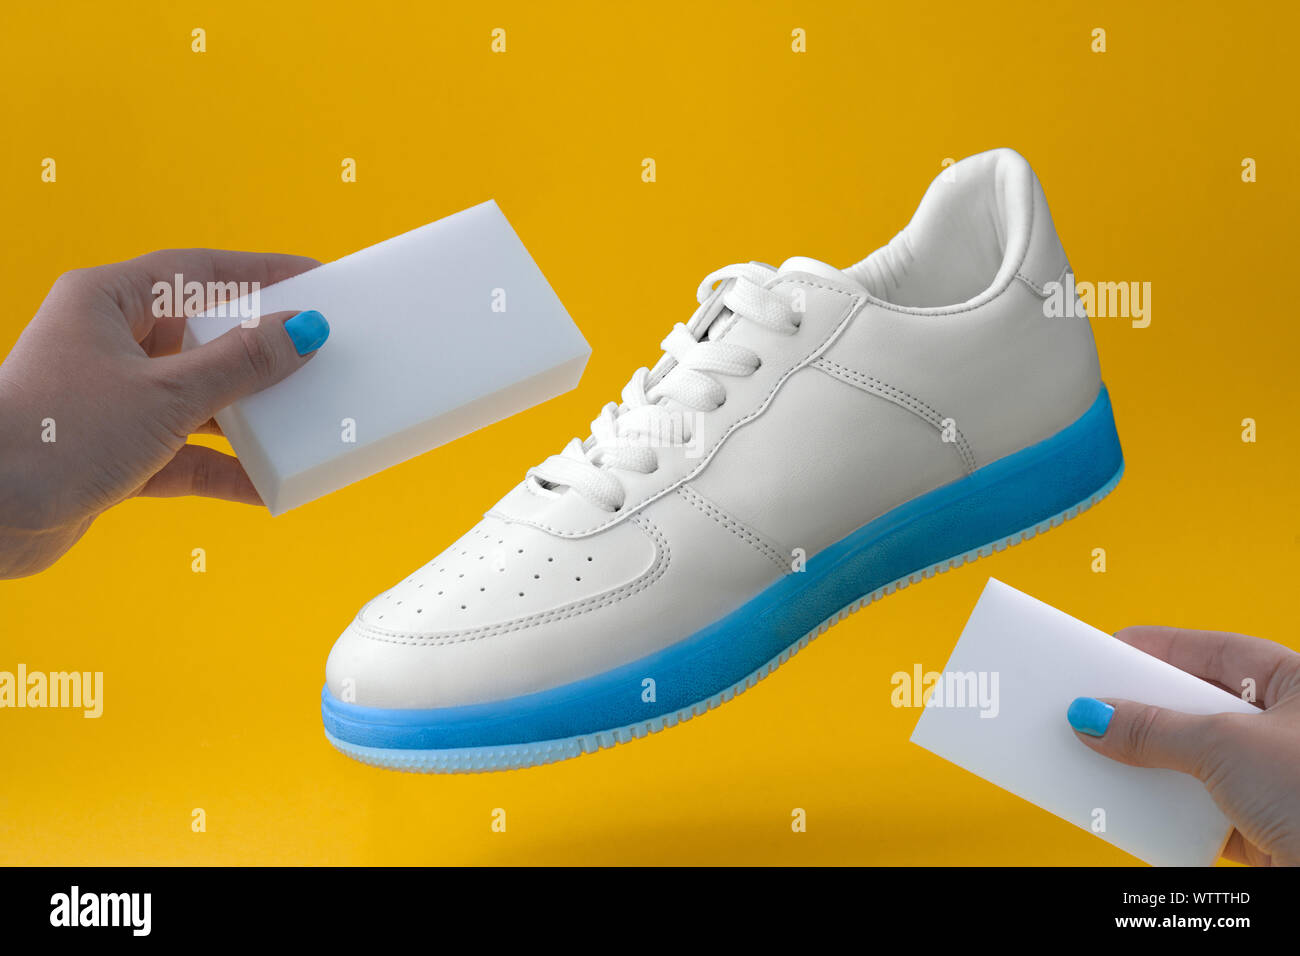 Trendige weisse Turnschuhe mit blauer Sohle und weibliche Hände mit  Schwämmen auf gelbem Hintergrund, Schuhe Care Concept Stockfotografie -  Alamy